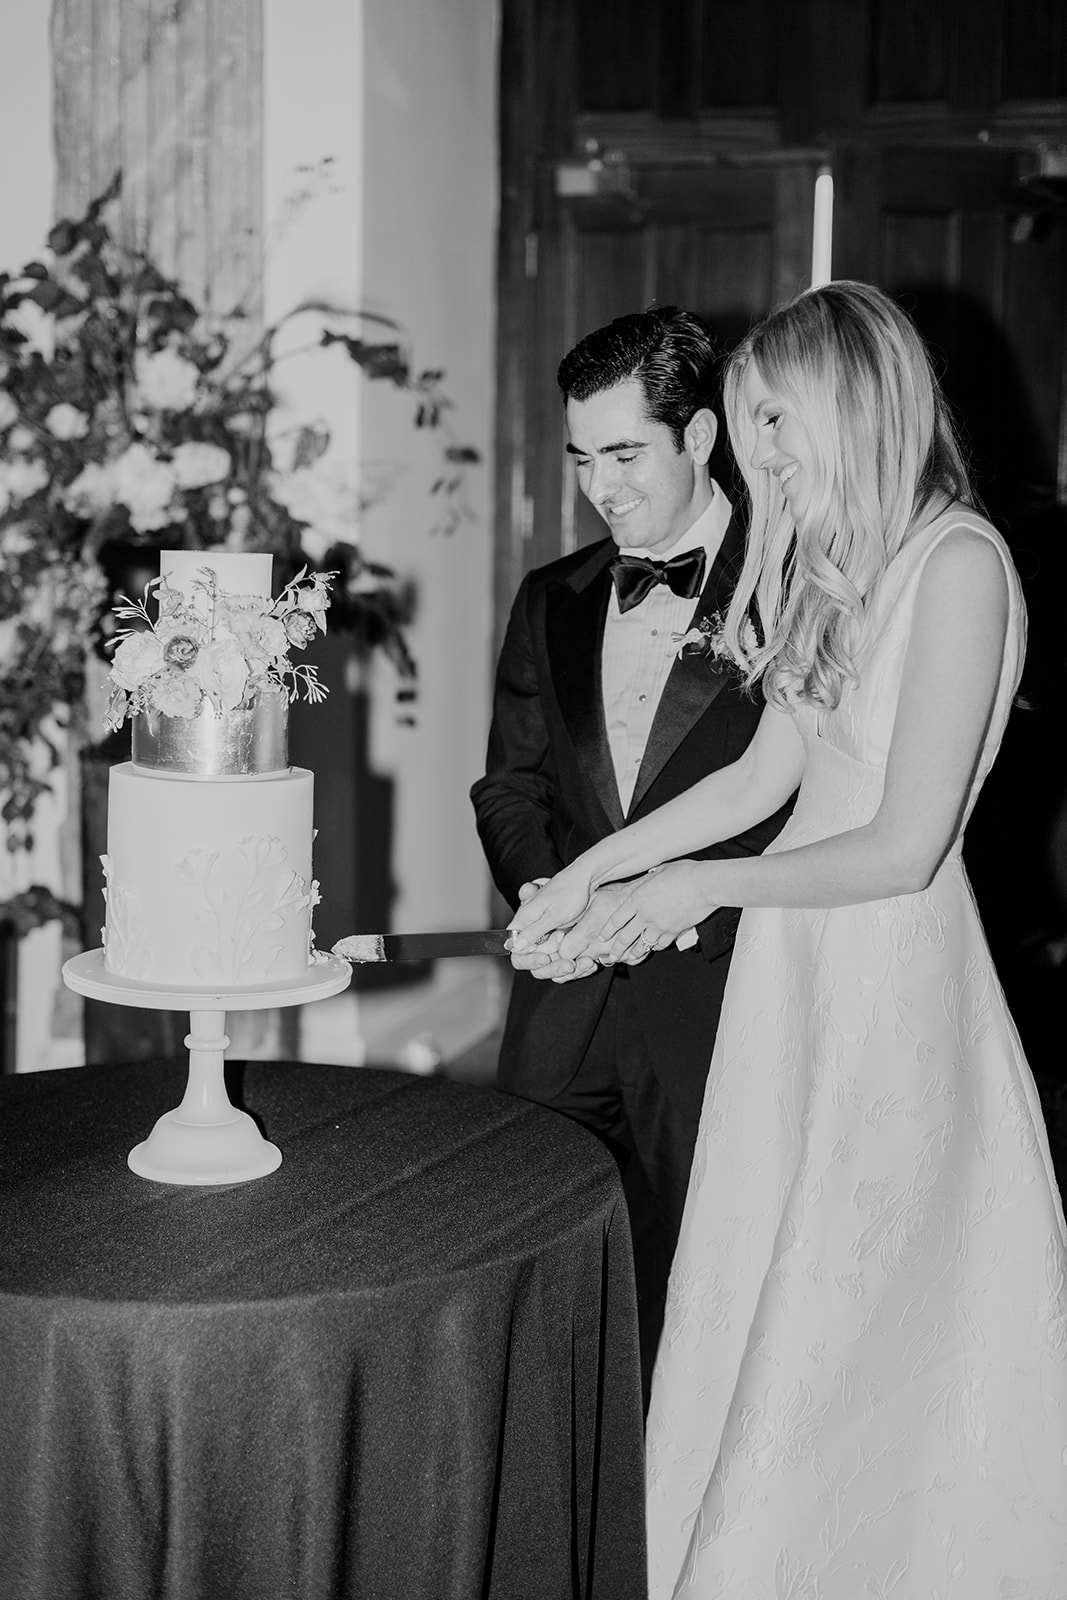 Couple Cutting Wedding Cake